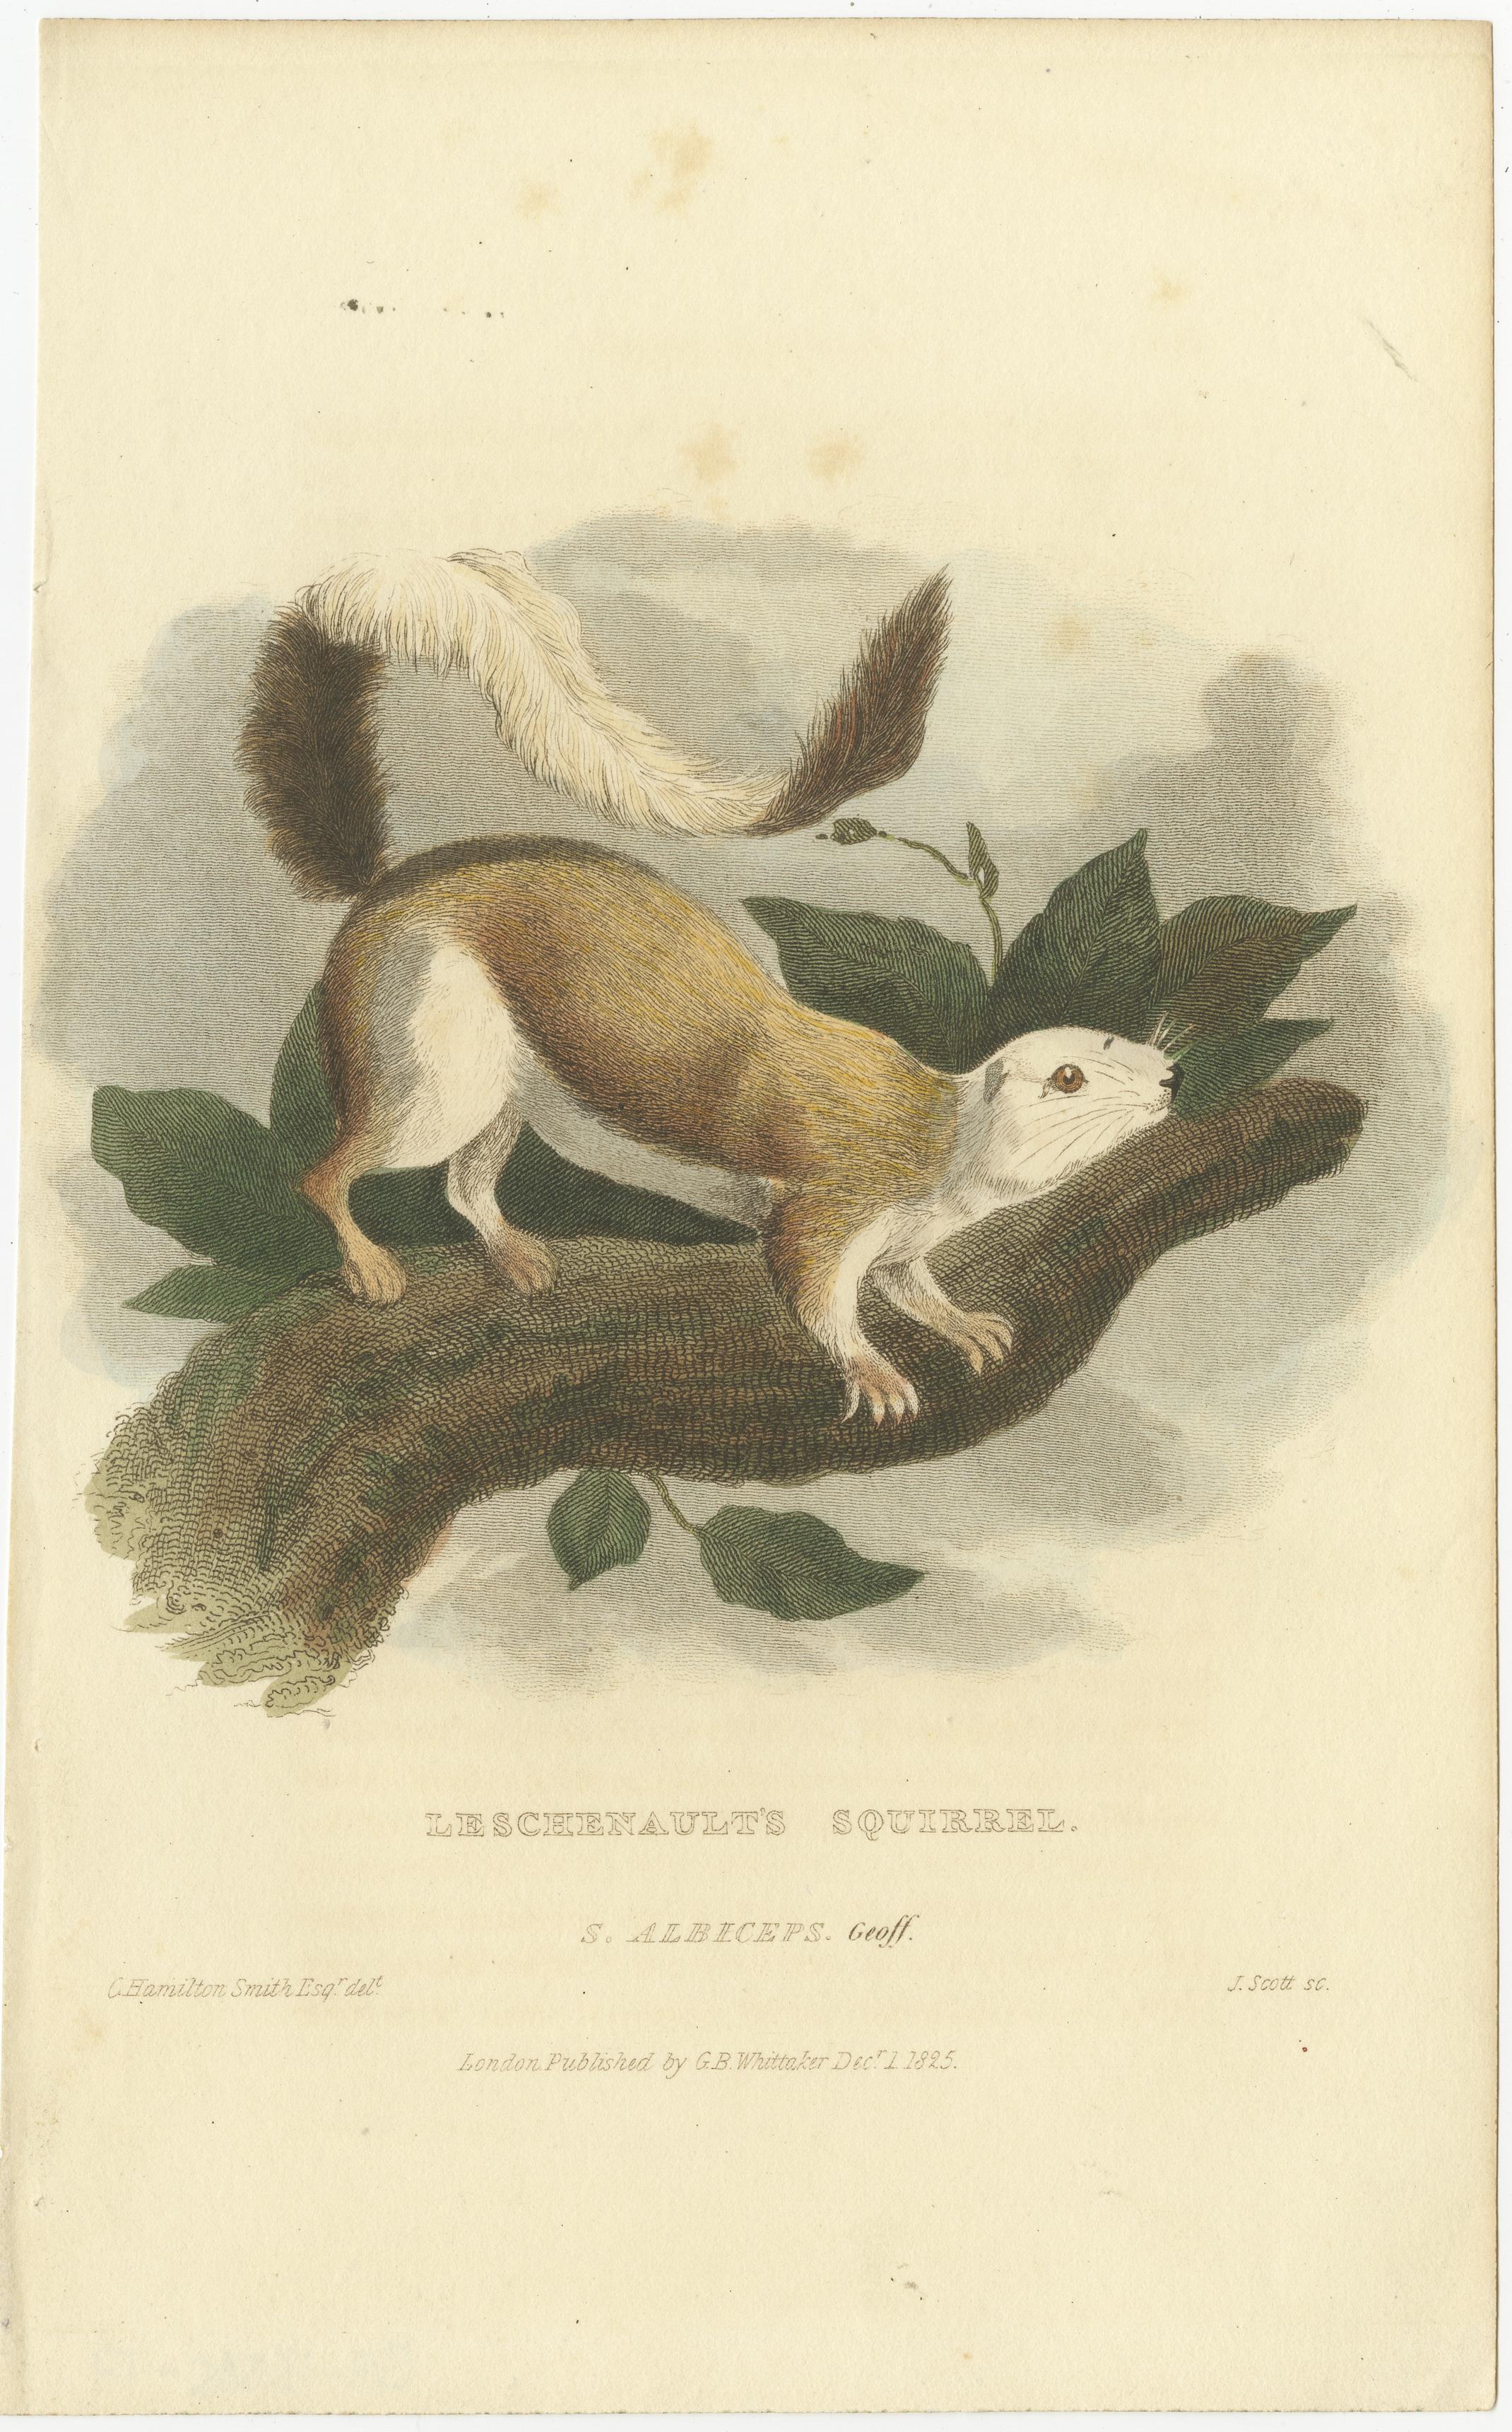 Cette estampe représente l'écureuil de Leschenault, également connu sous le nom de Sciurus albiceps. L'animal illustré n'est en fait pas l'écureuil de Leschenault, mais plutôt l'écureuil géant noir ou écureuil géant malais (Ratufa bicolor), qui est